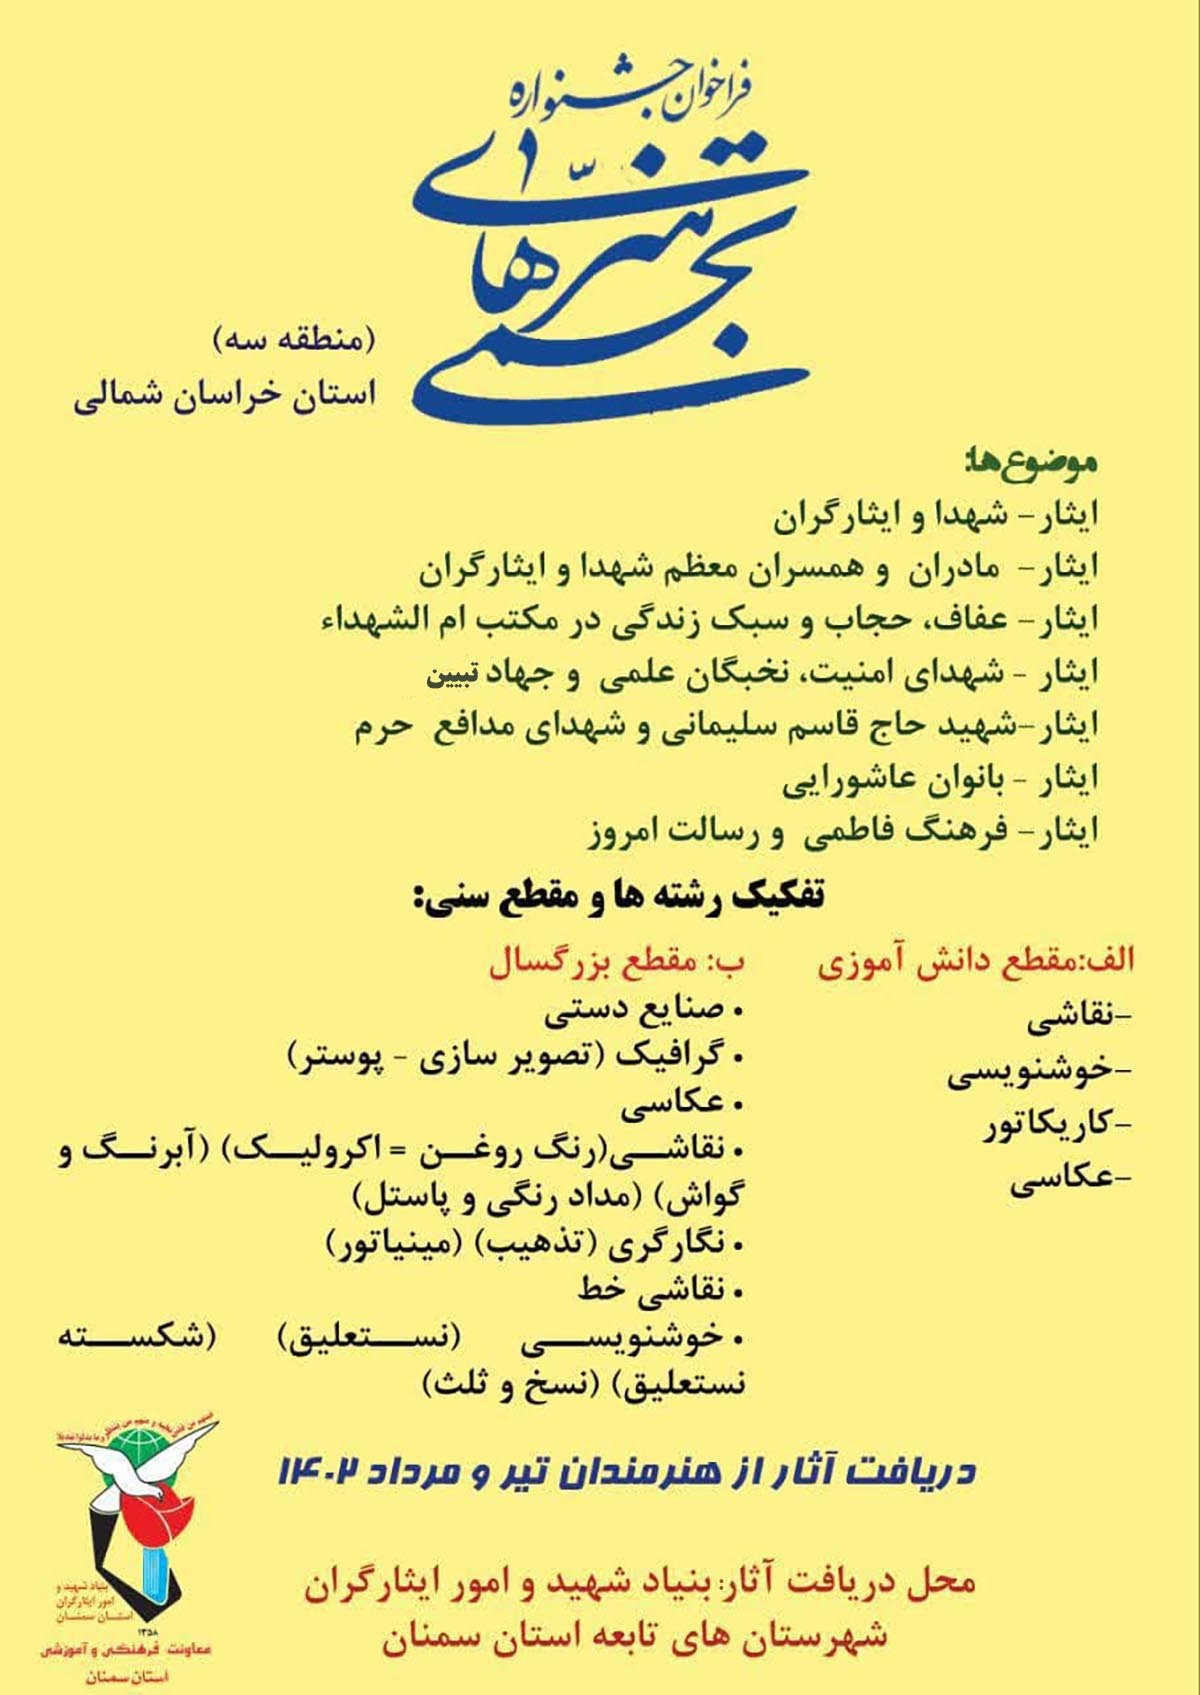 فراخوان جشنواره هنرهای تجسمی